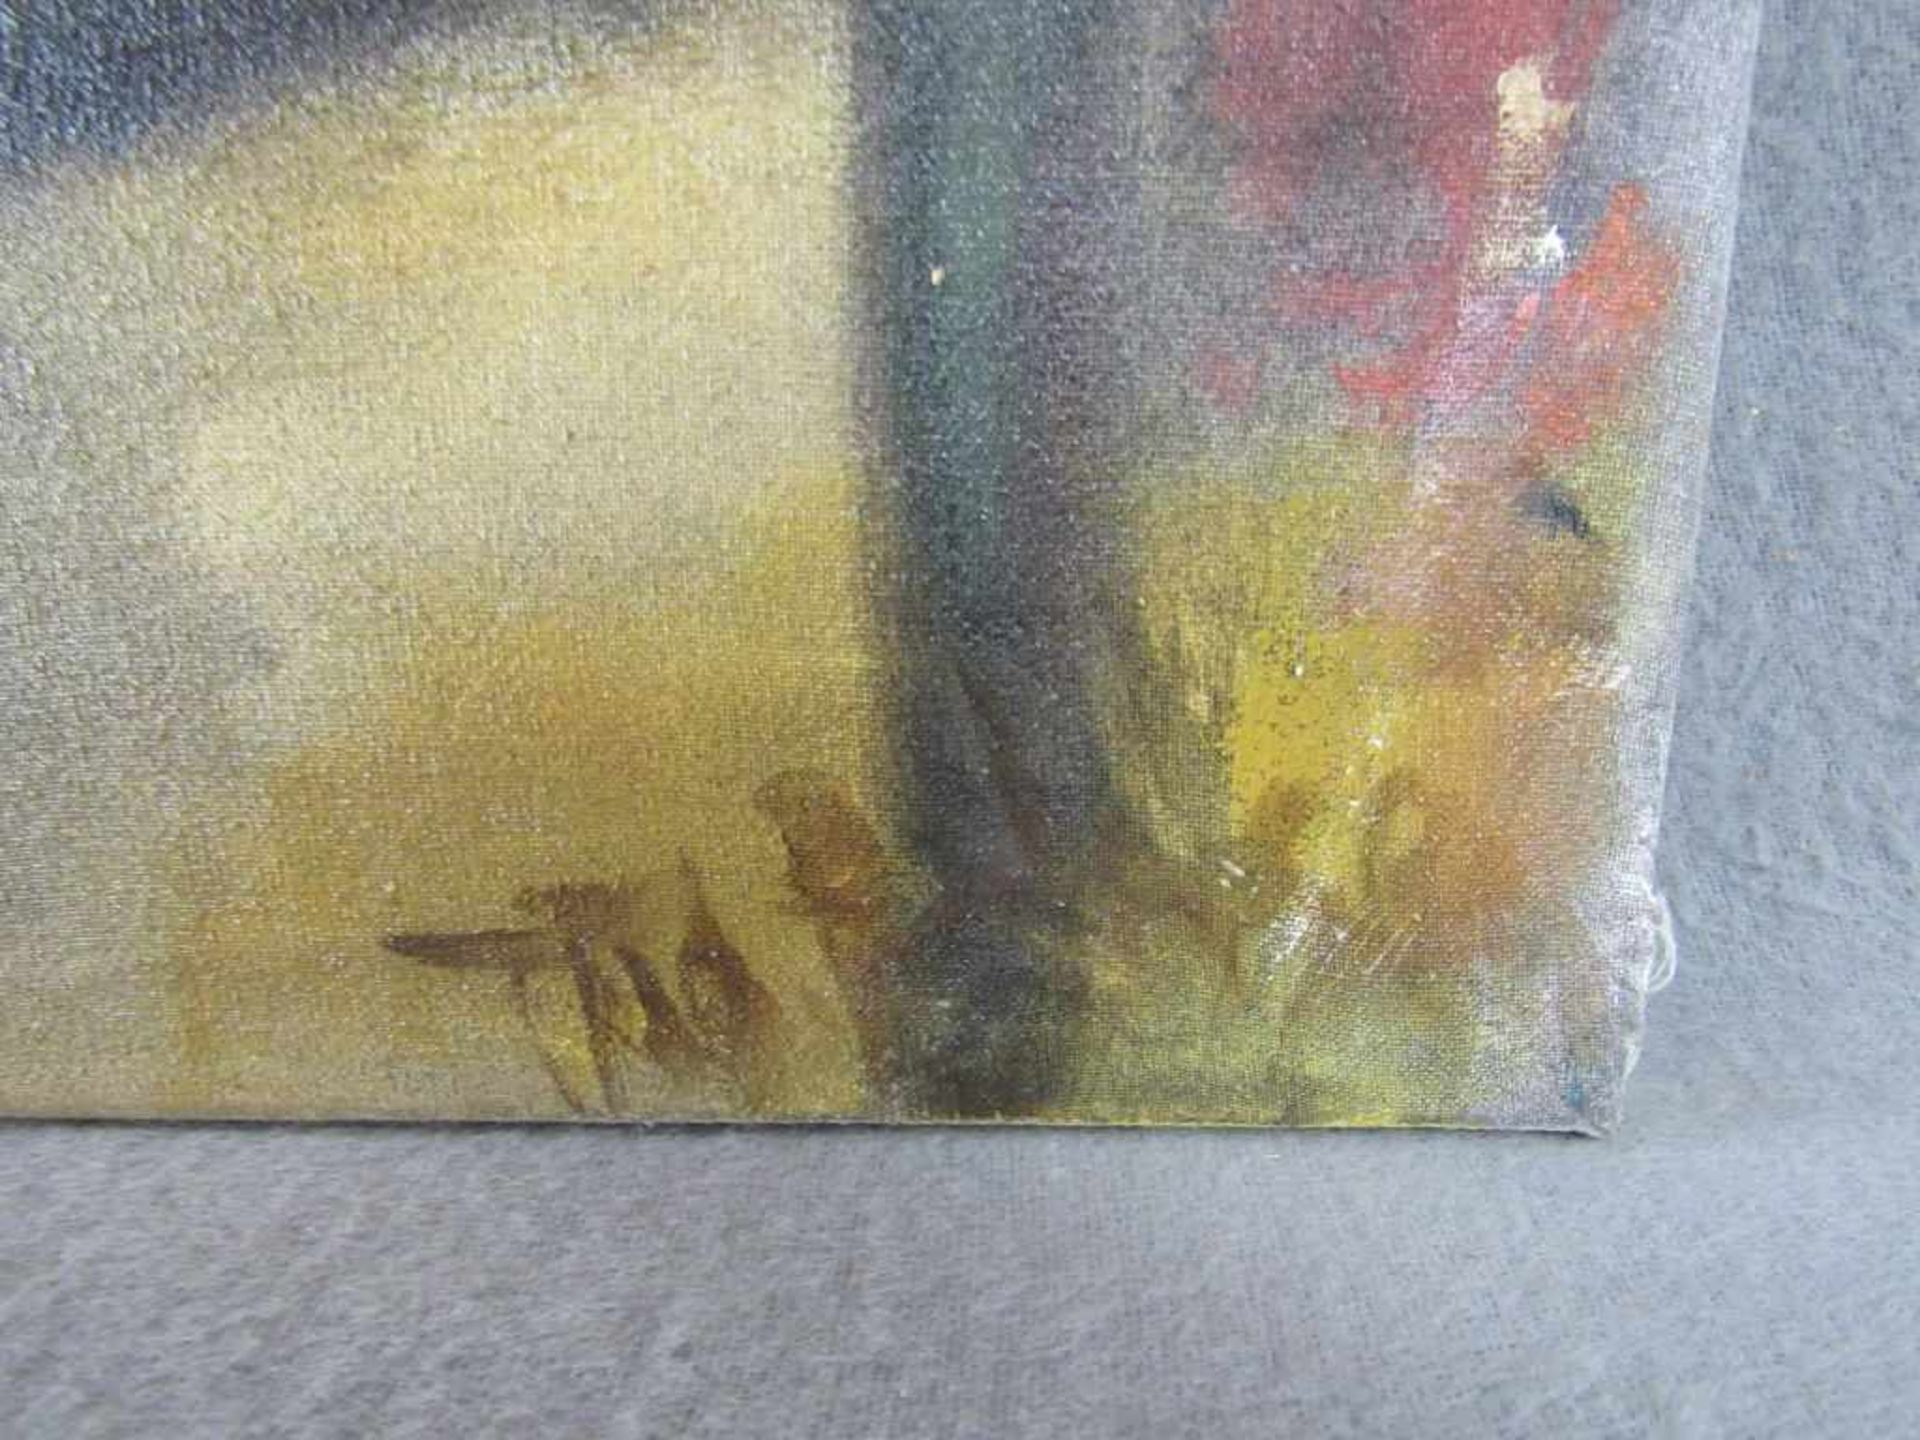 Gemälde Aktszene Öl auf Leinwand unleserlich signiert 55x70cm - Bild 2 aus 3